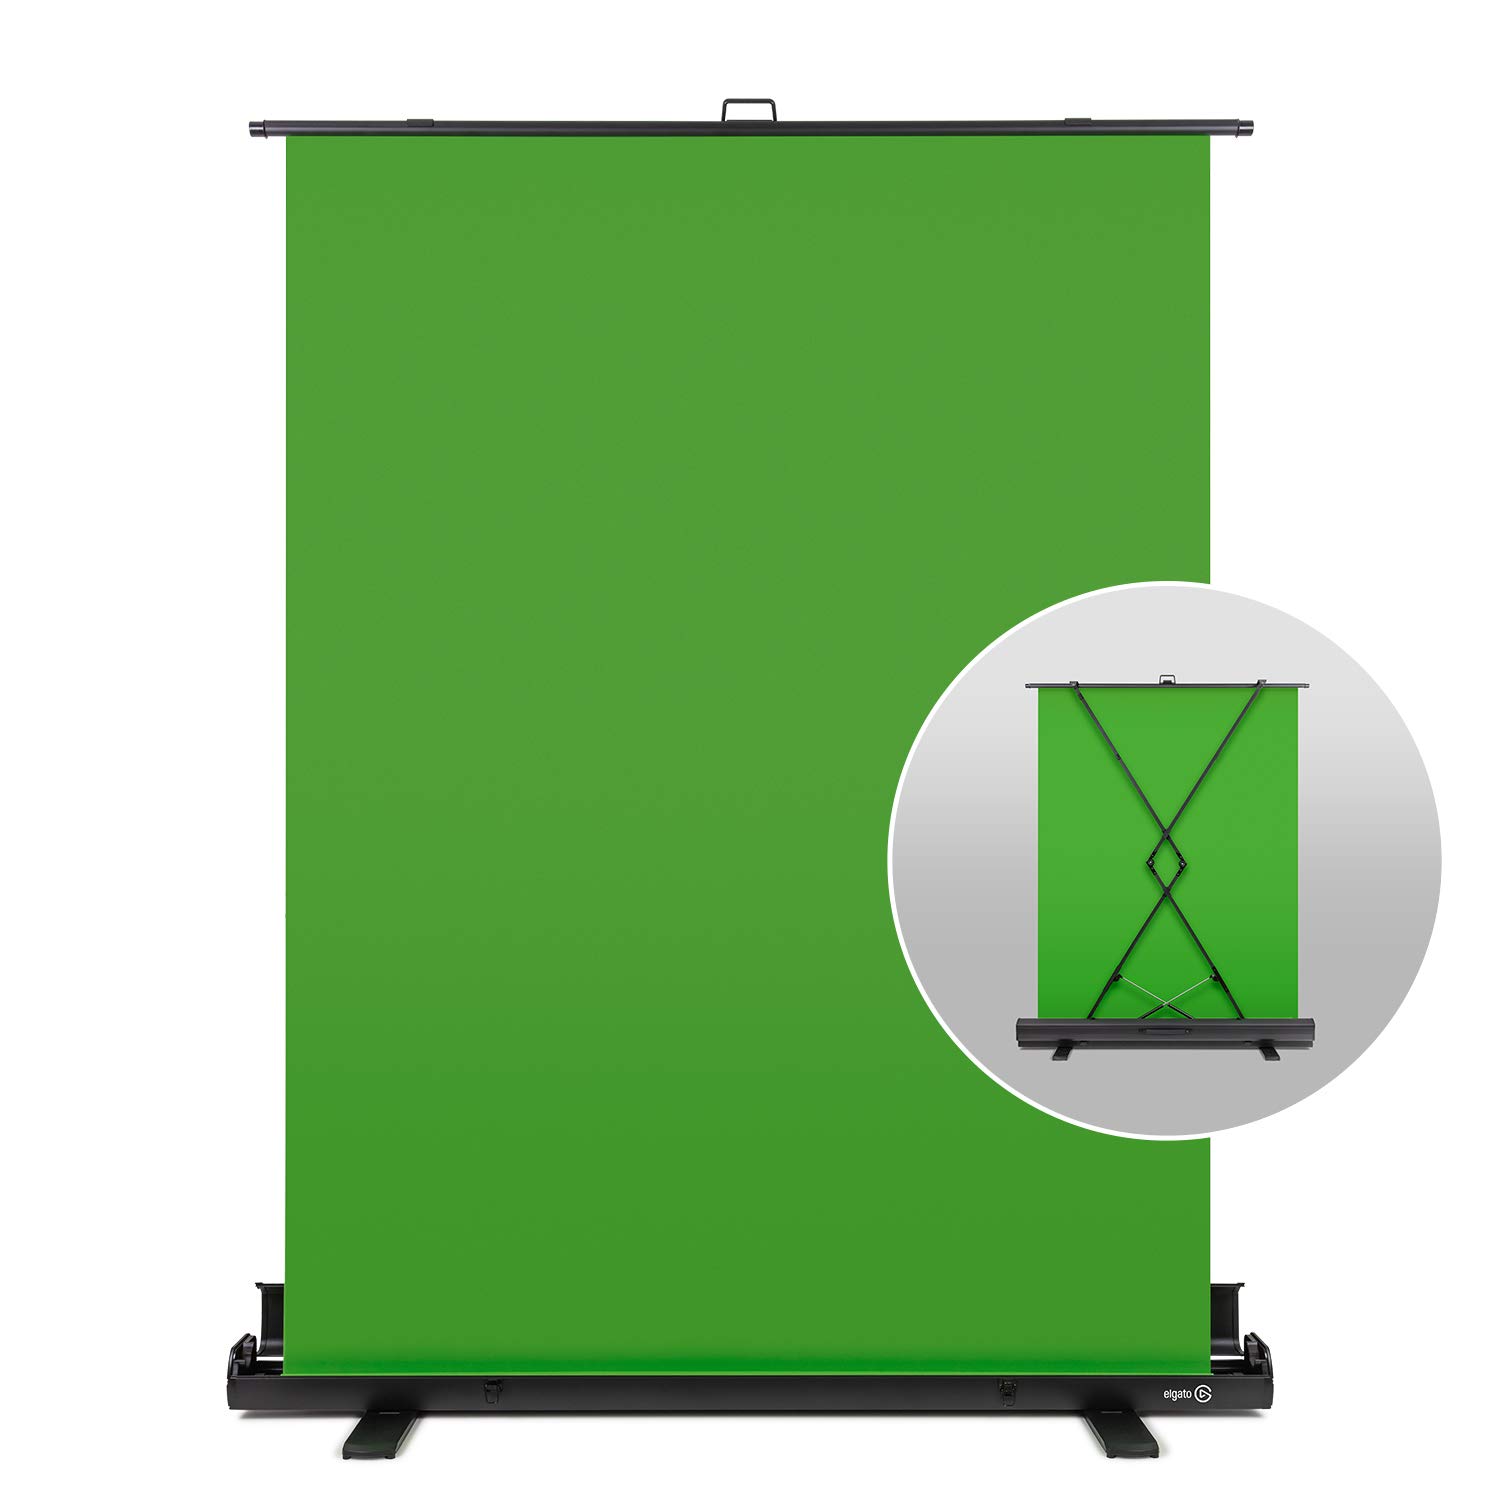 Bạn đang đi tới một công ty hay một địa điểm quay phim và muốn tạo ra một bối cảnh hoàn hảo? Hãy tưởng tượng rằng bạn có Elgato Green Screen, một bảng màn hình màu xanh lá cây được thiết kế để giúp bạn tới gần hơn với công việc của mình. Hãy cùng đến với hình ảnh được liên kết để tìm hiểu thêm chi tiết.